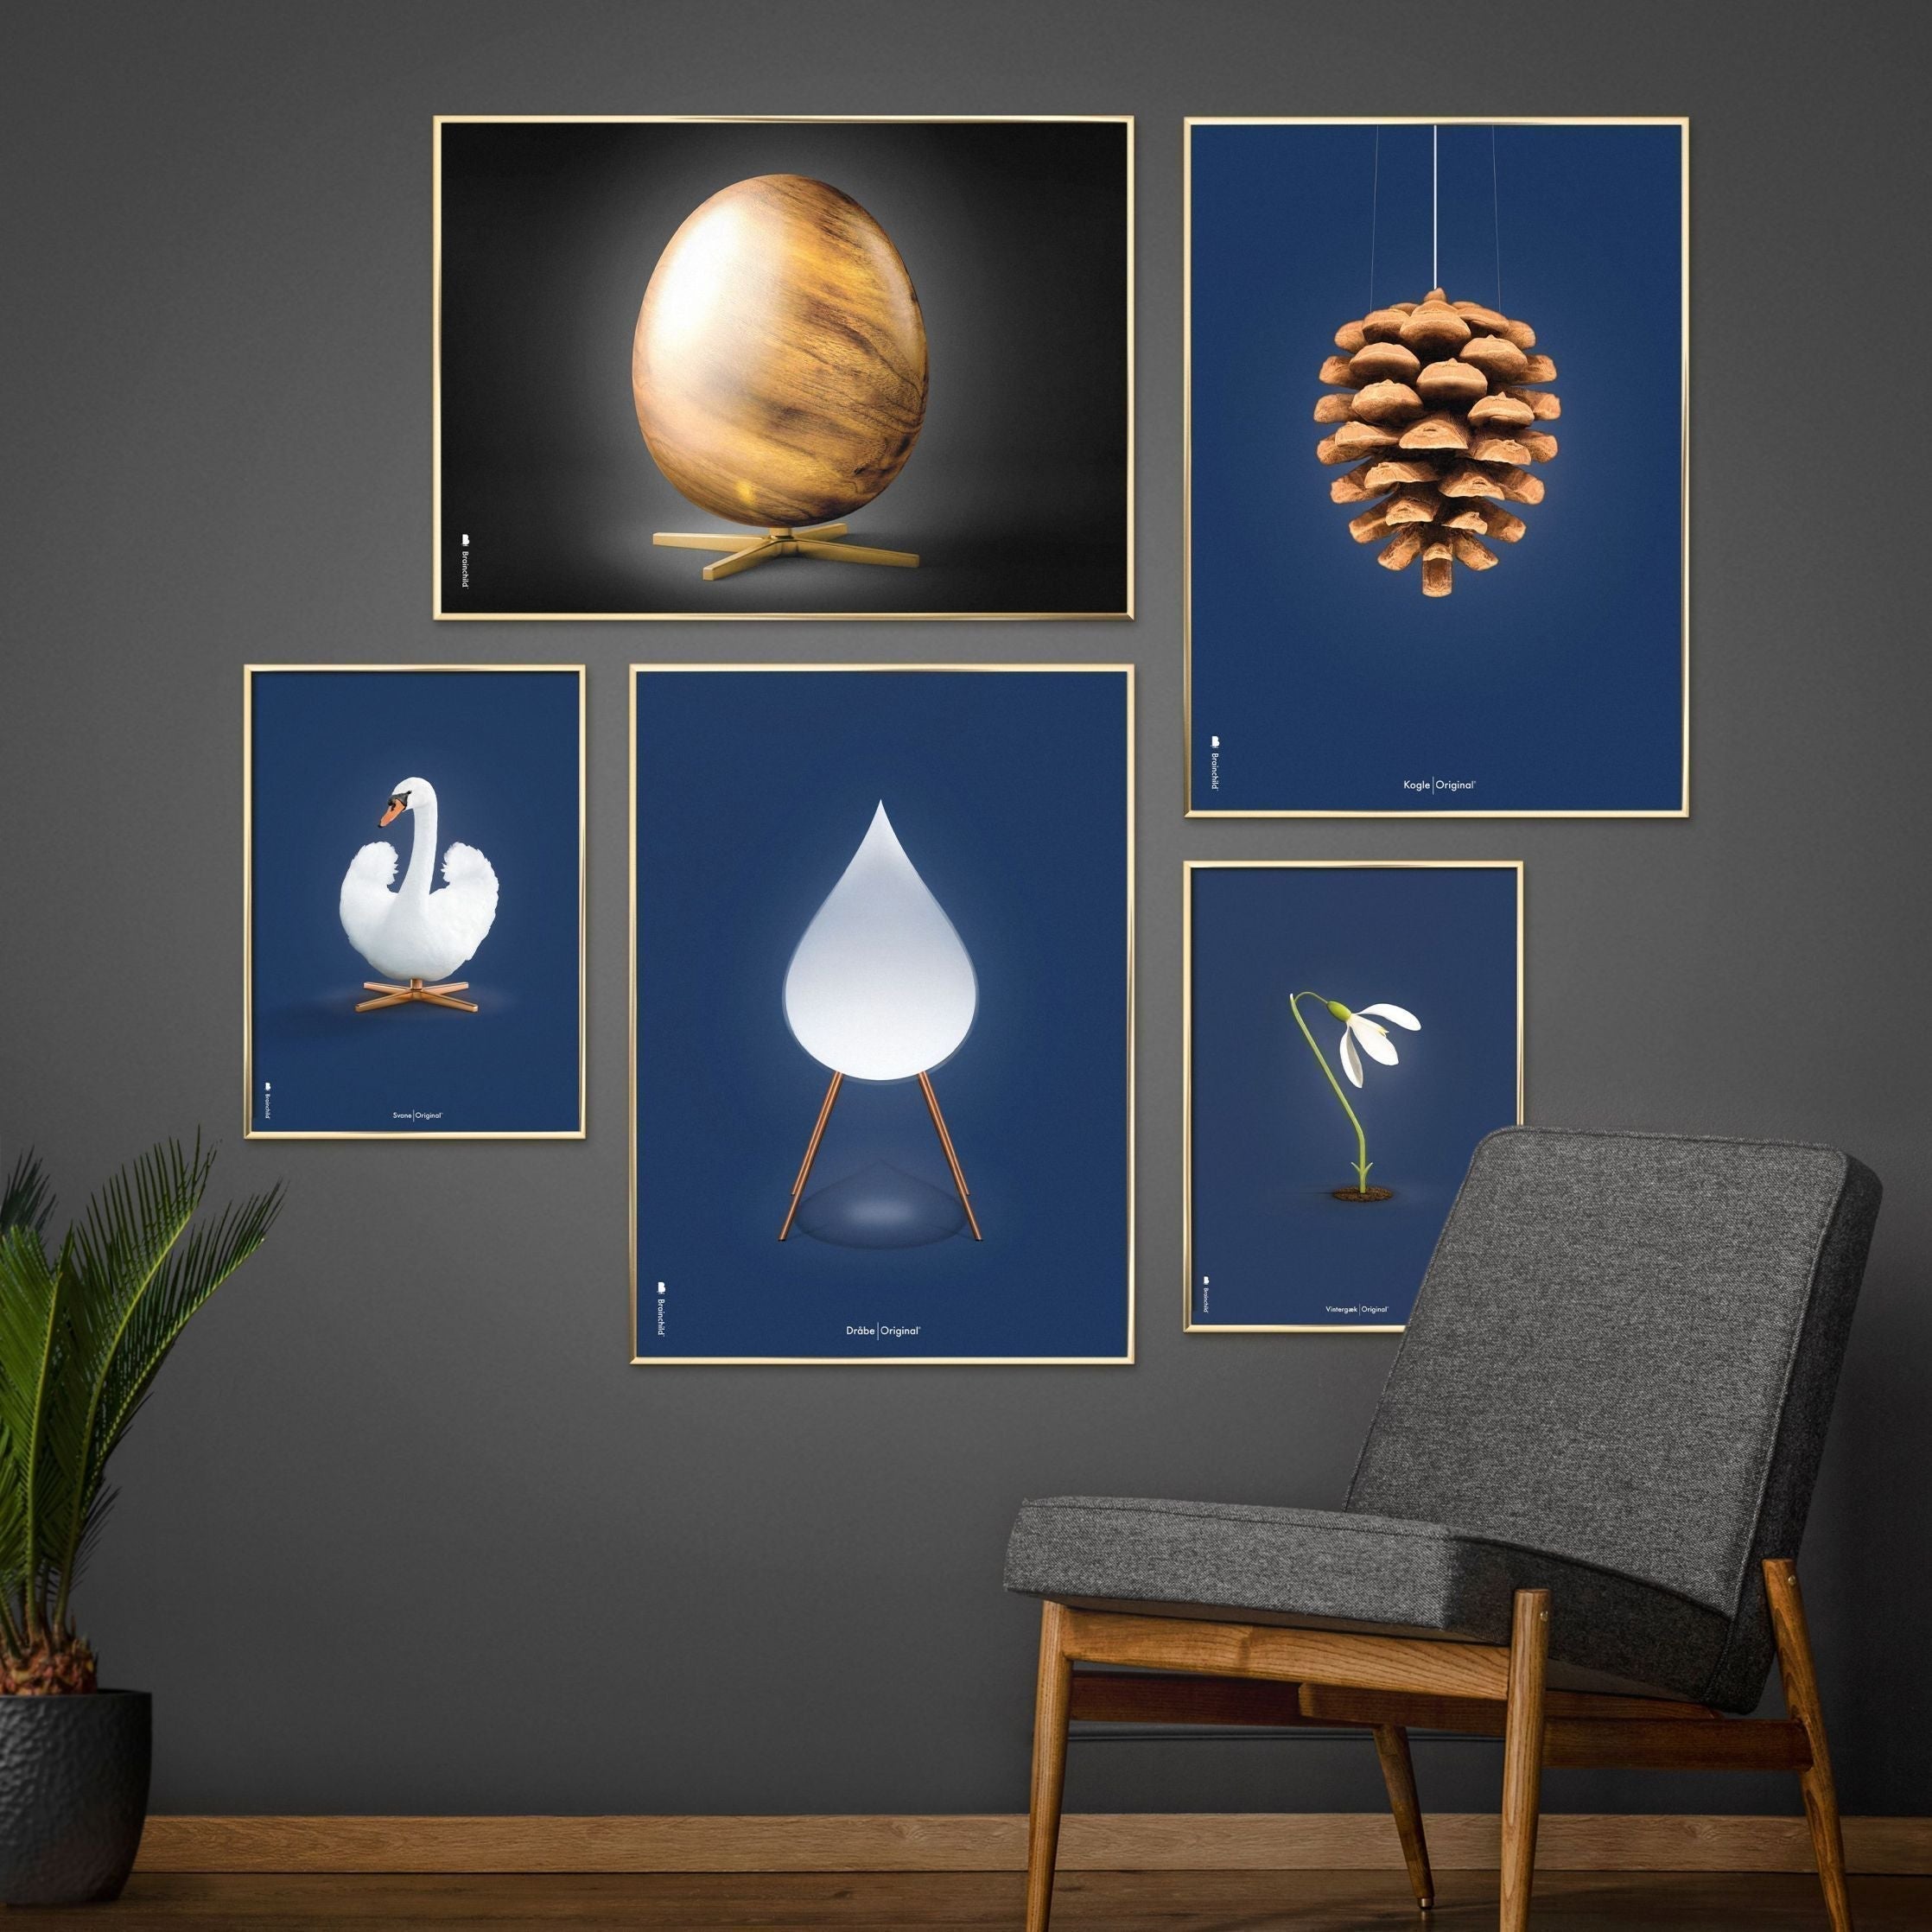 Poster classico di cigni di frutta, cornice in legno scuro A5, sfondo blu scuro